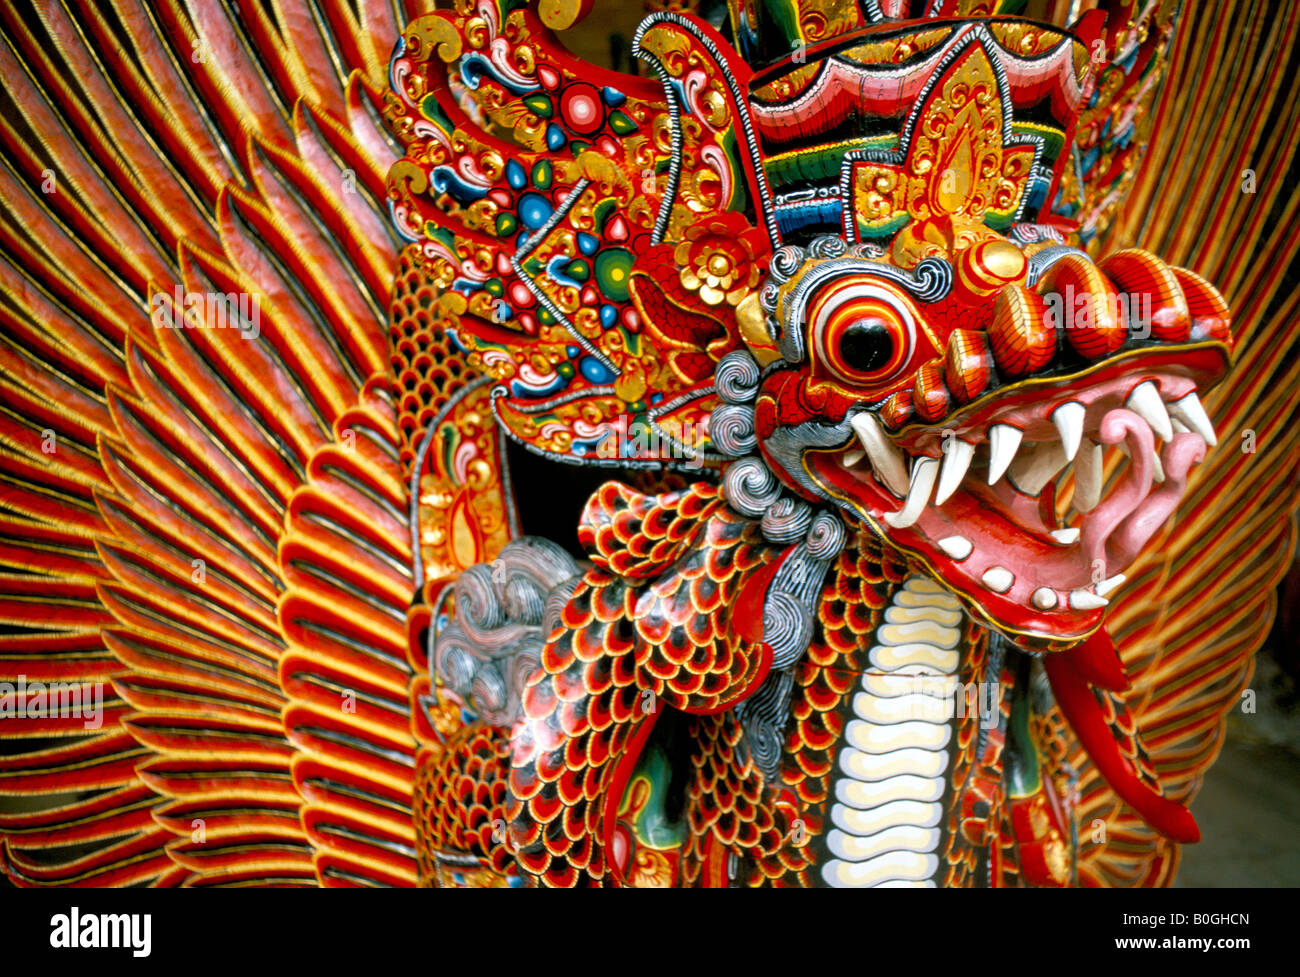 Un dragon en bois peintes de couleurs vives, Bali, Indonésie Photo Stock -  Alamy